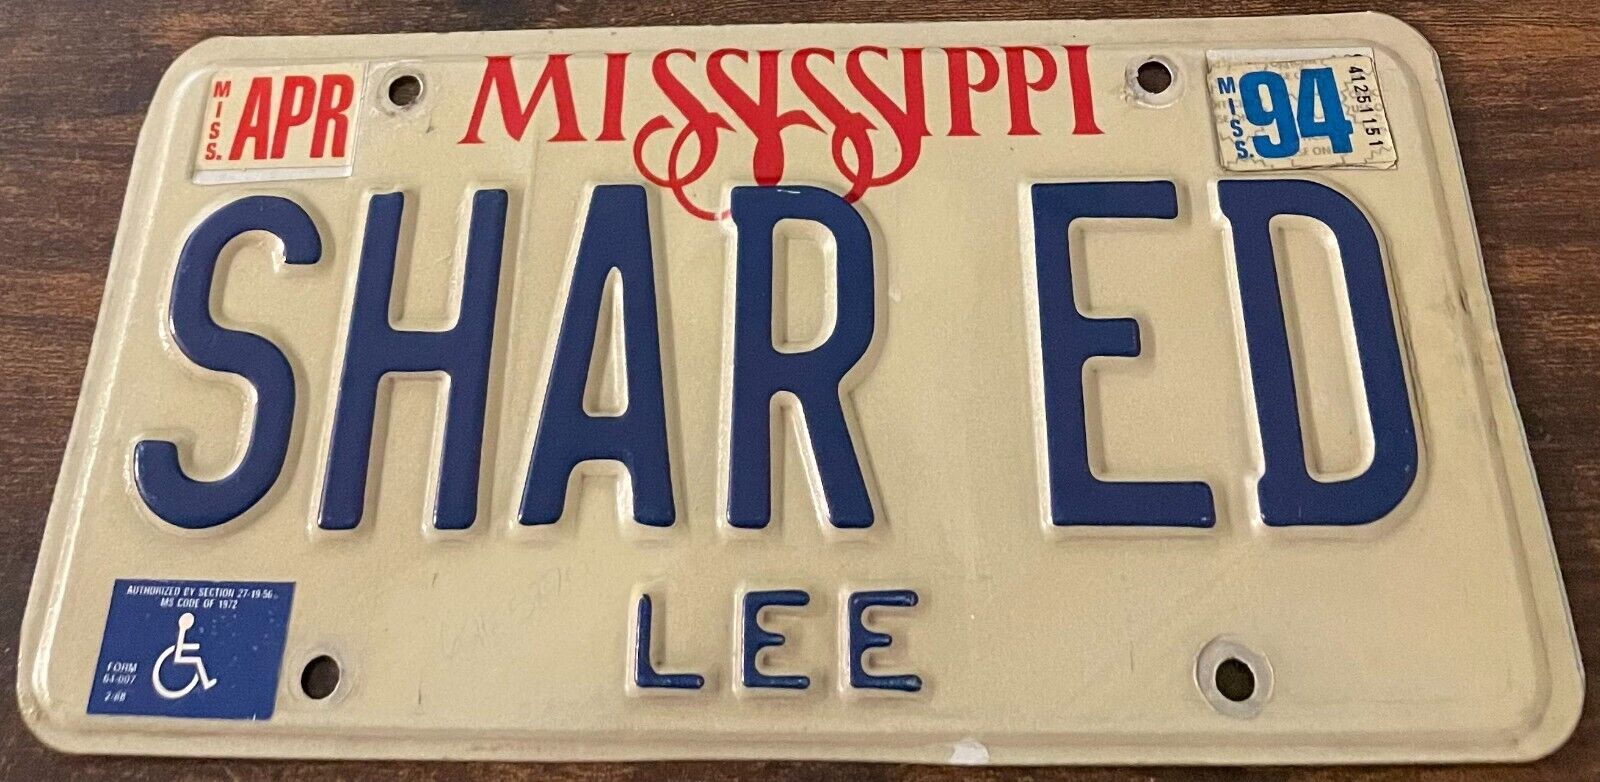 SHAR ED Vanity License Plate Mississippi SHARED Sharon & Ed Sharlene